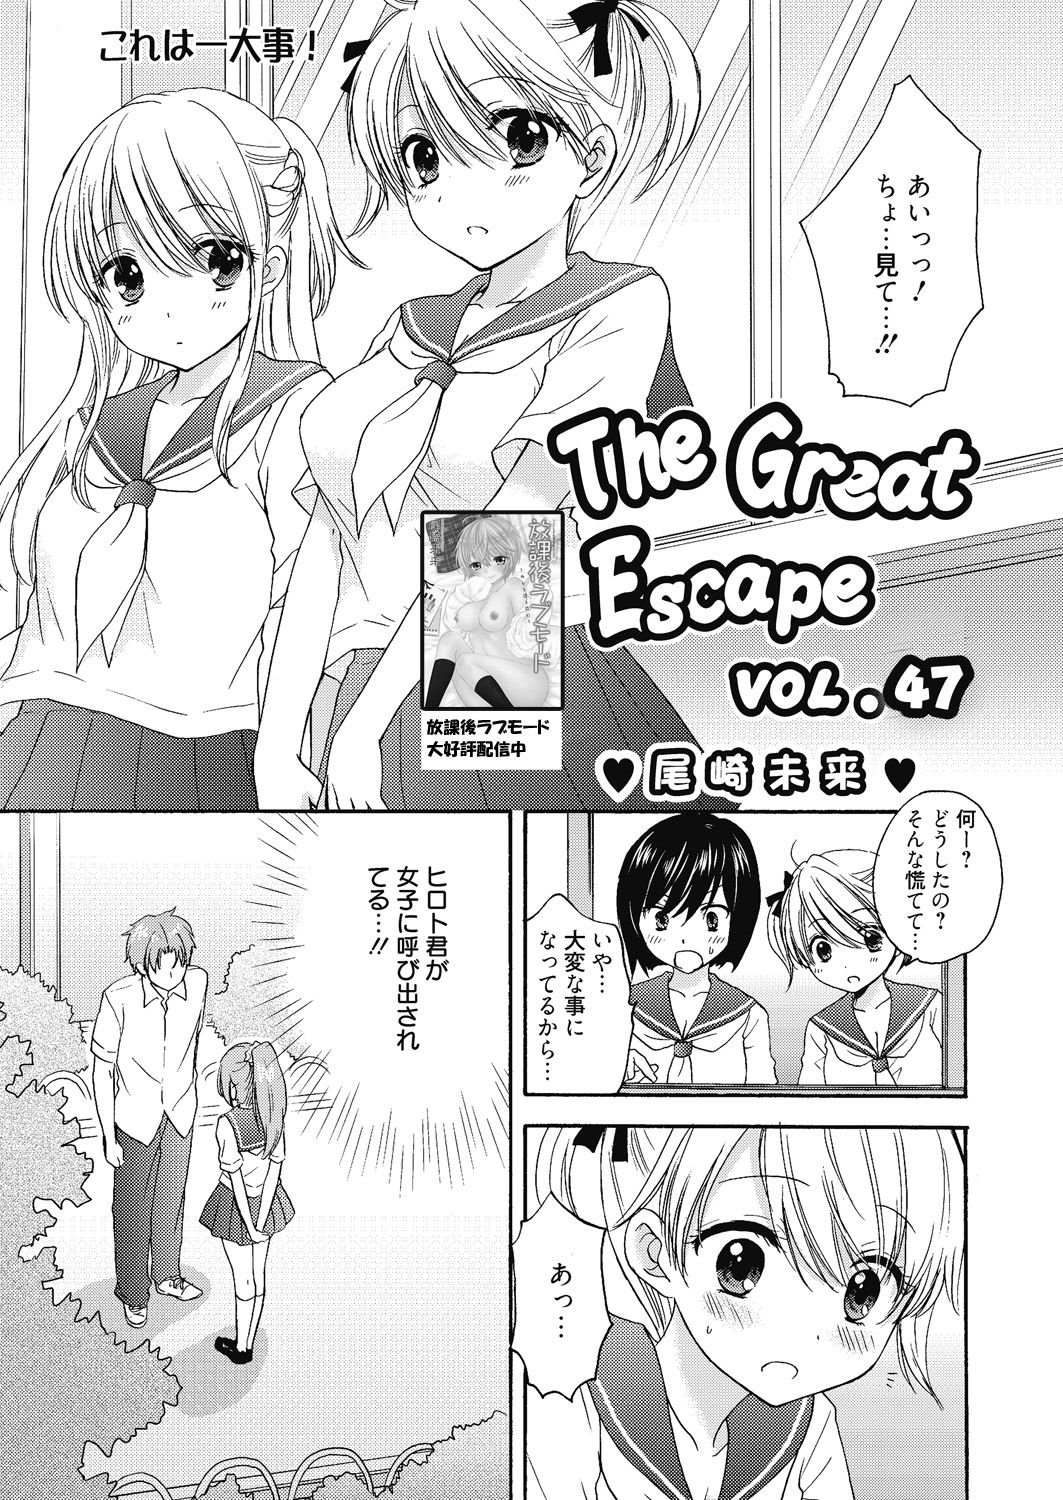 [尾崎未来] The Great Escape Extra. 2